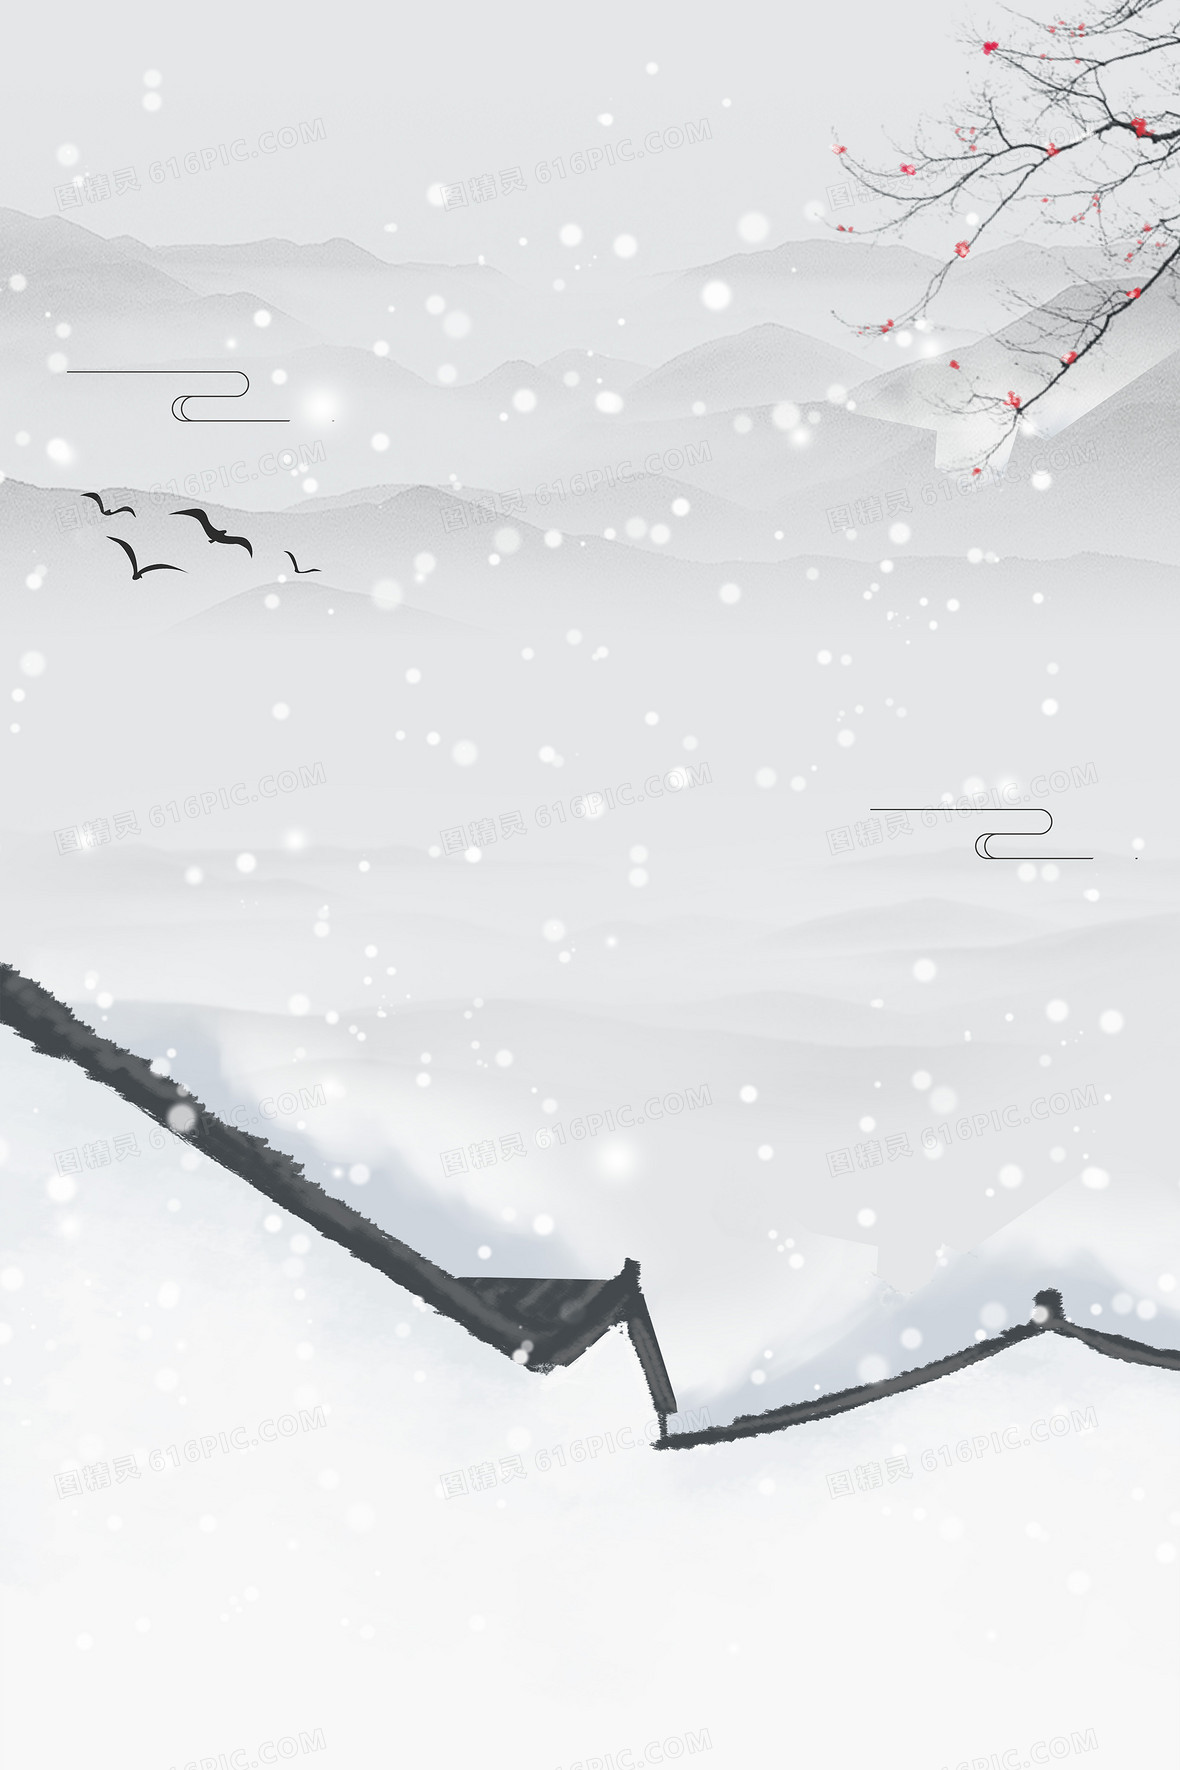 下雪背景图片下载 免费高清下雪背景设计素材 图精灵